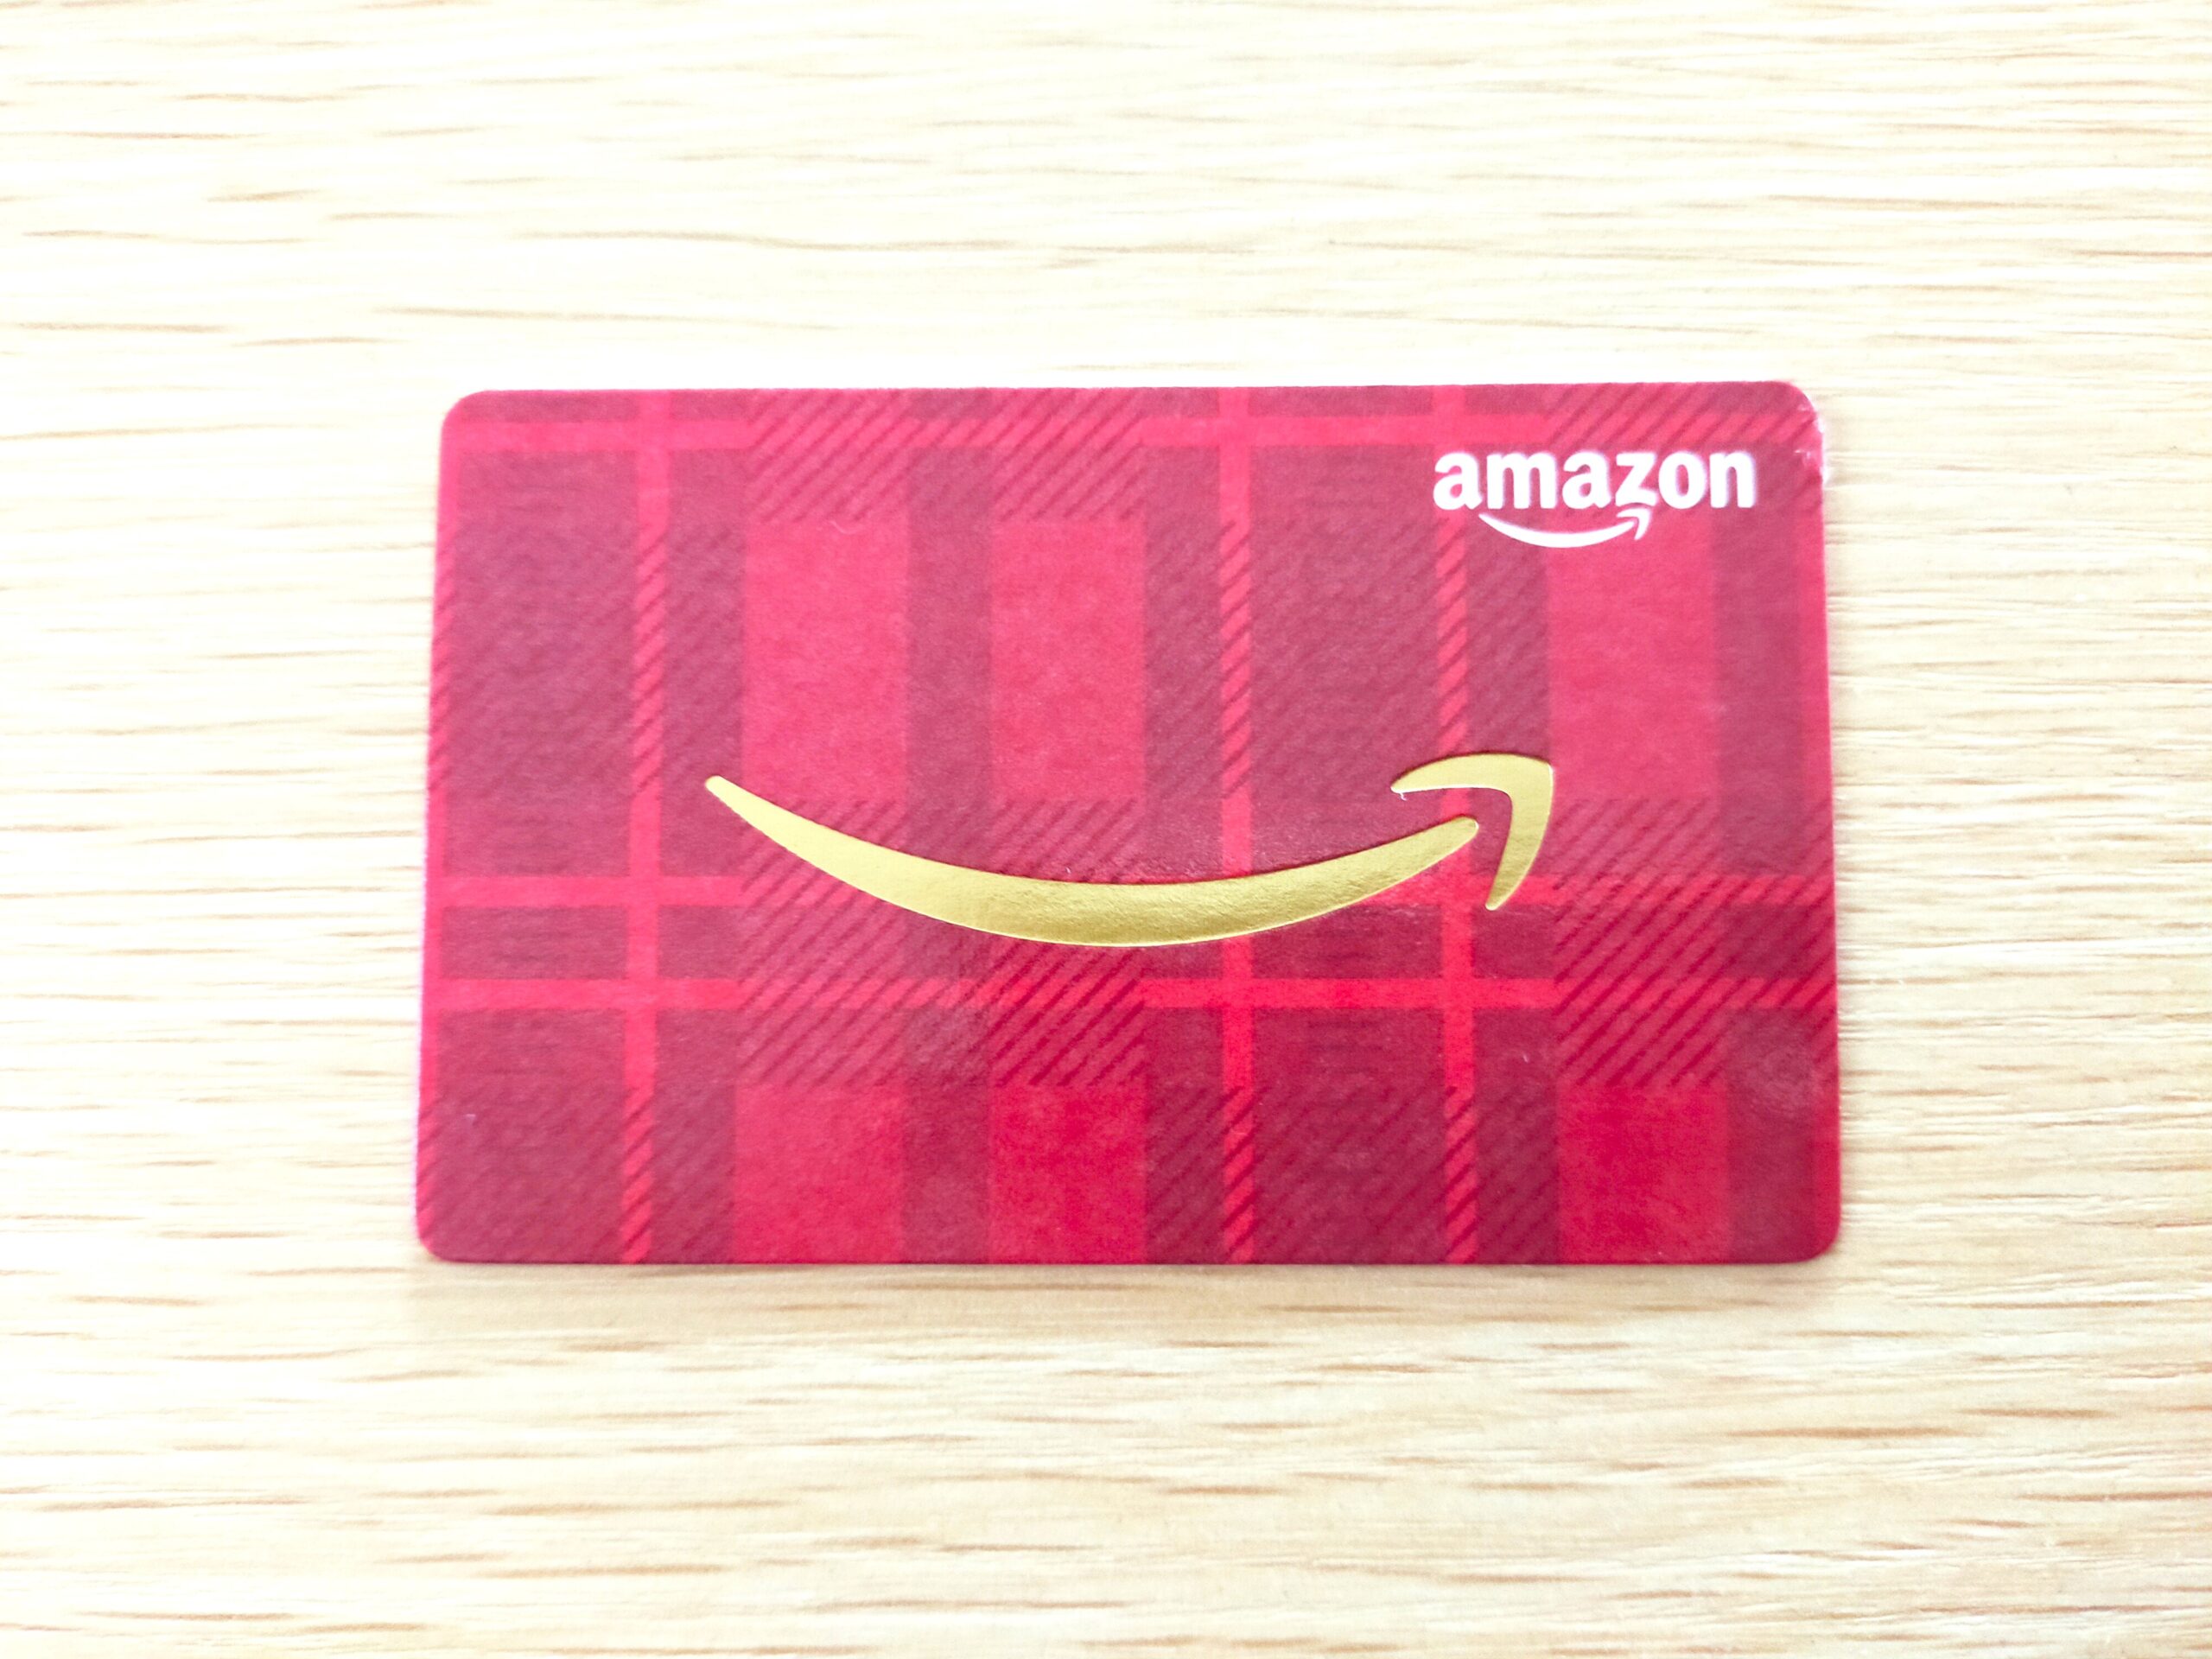 Amazonギフト券グリーティングカードタイプのサンタクロース 